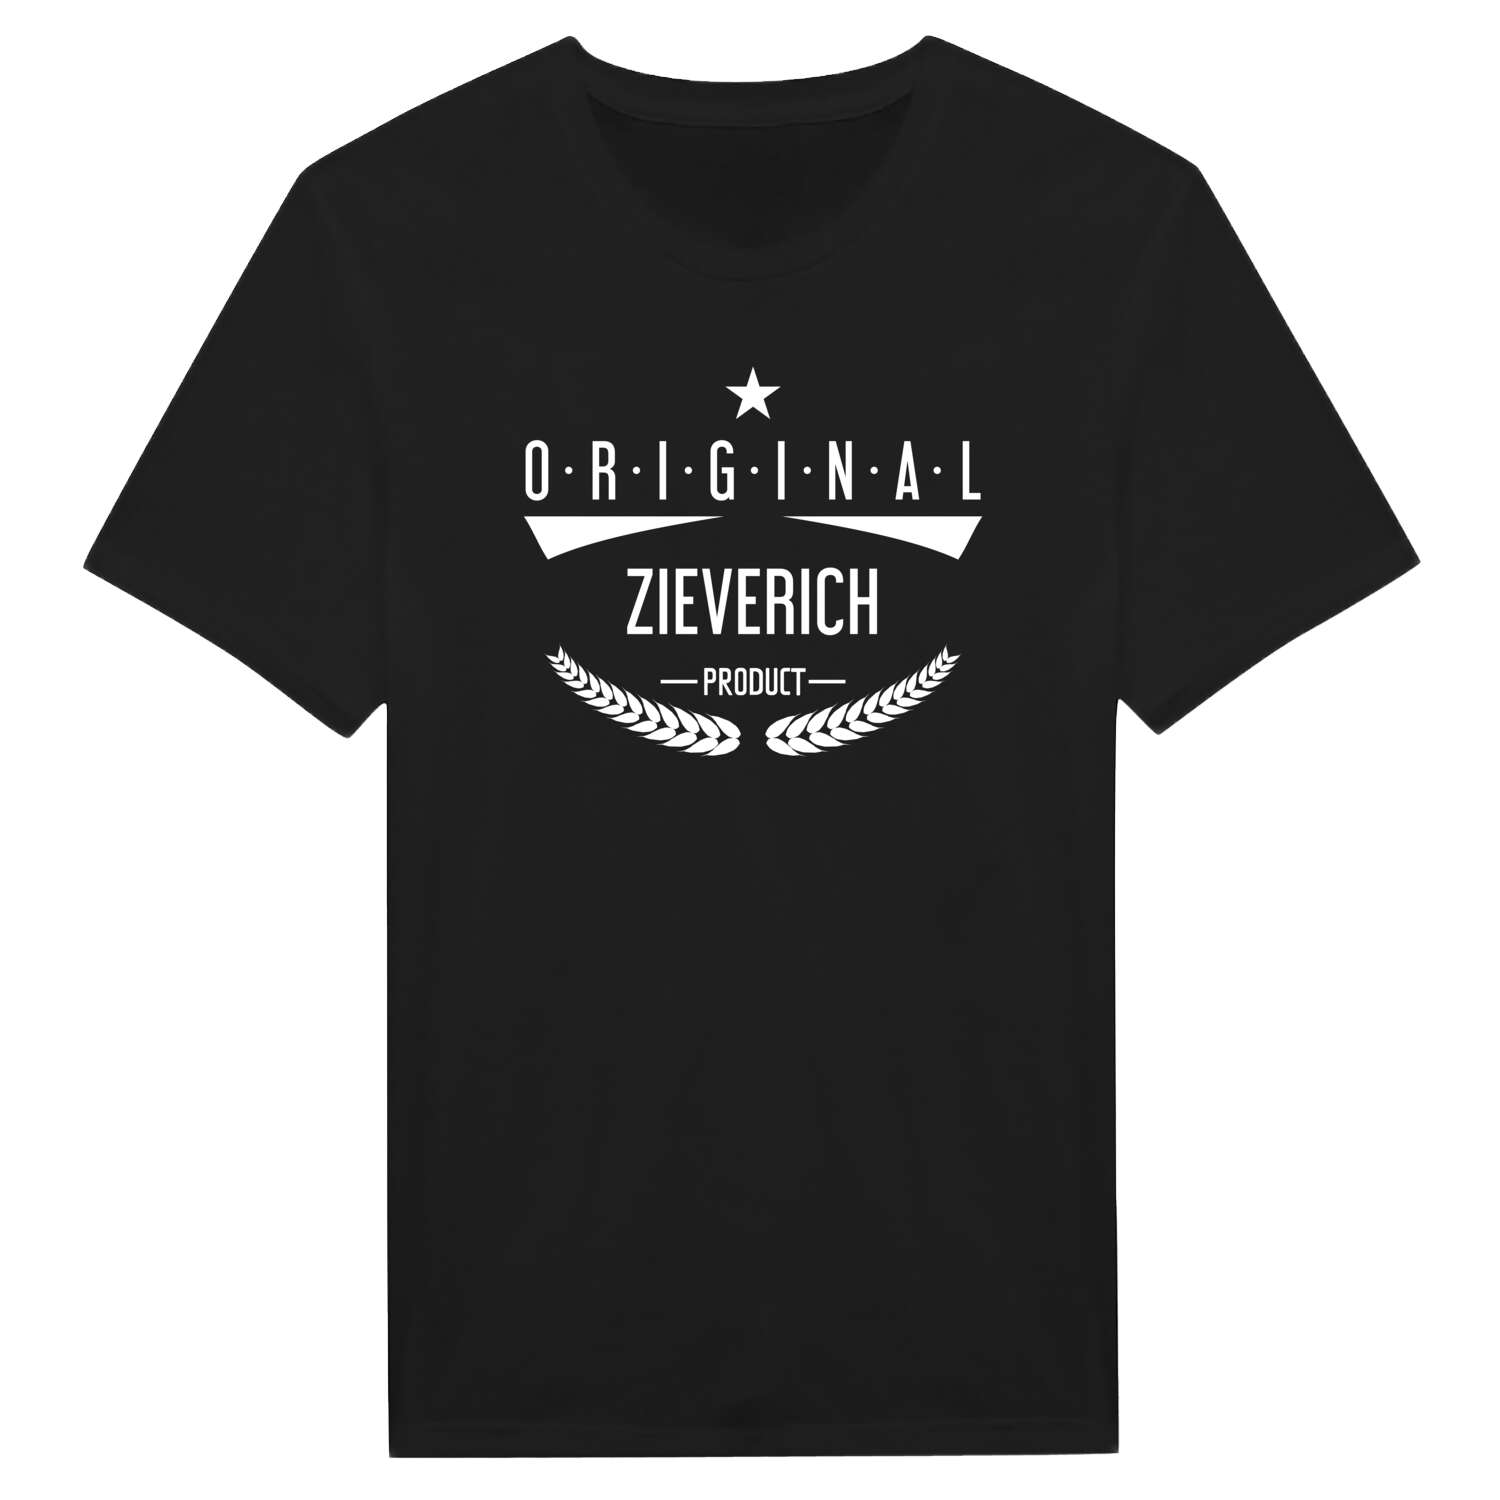 Zieverich T-Shirt »Original Product«